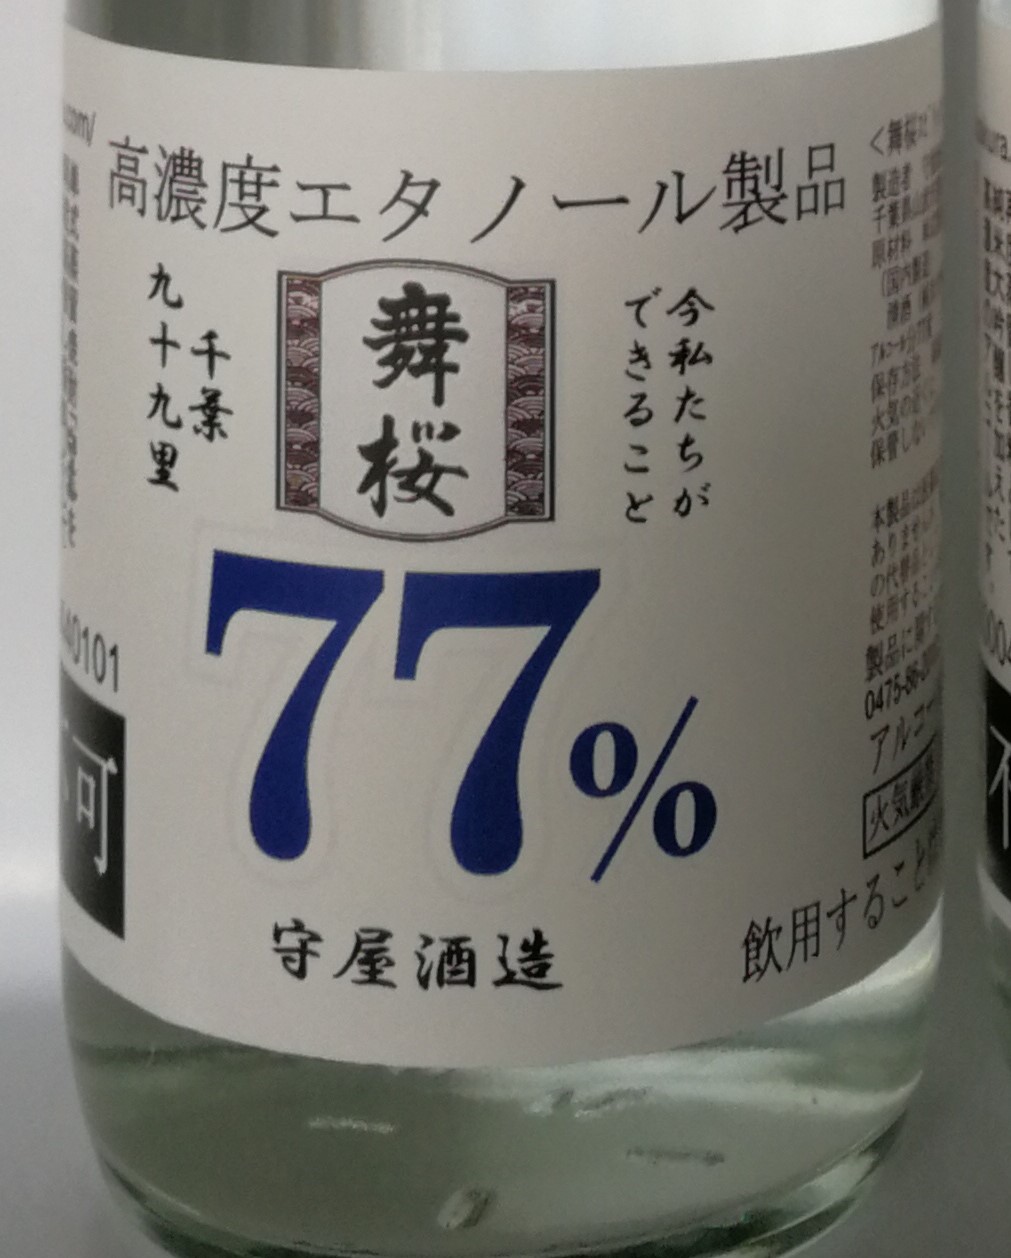 酒蔵が作った消毒用アルコール「舞桜77」